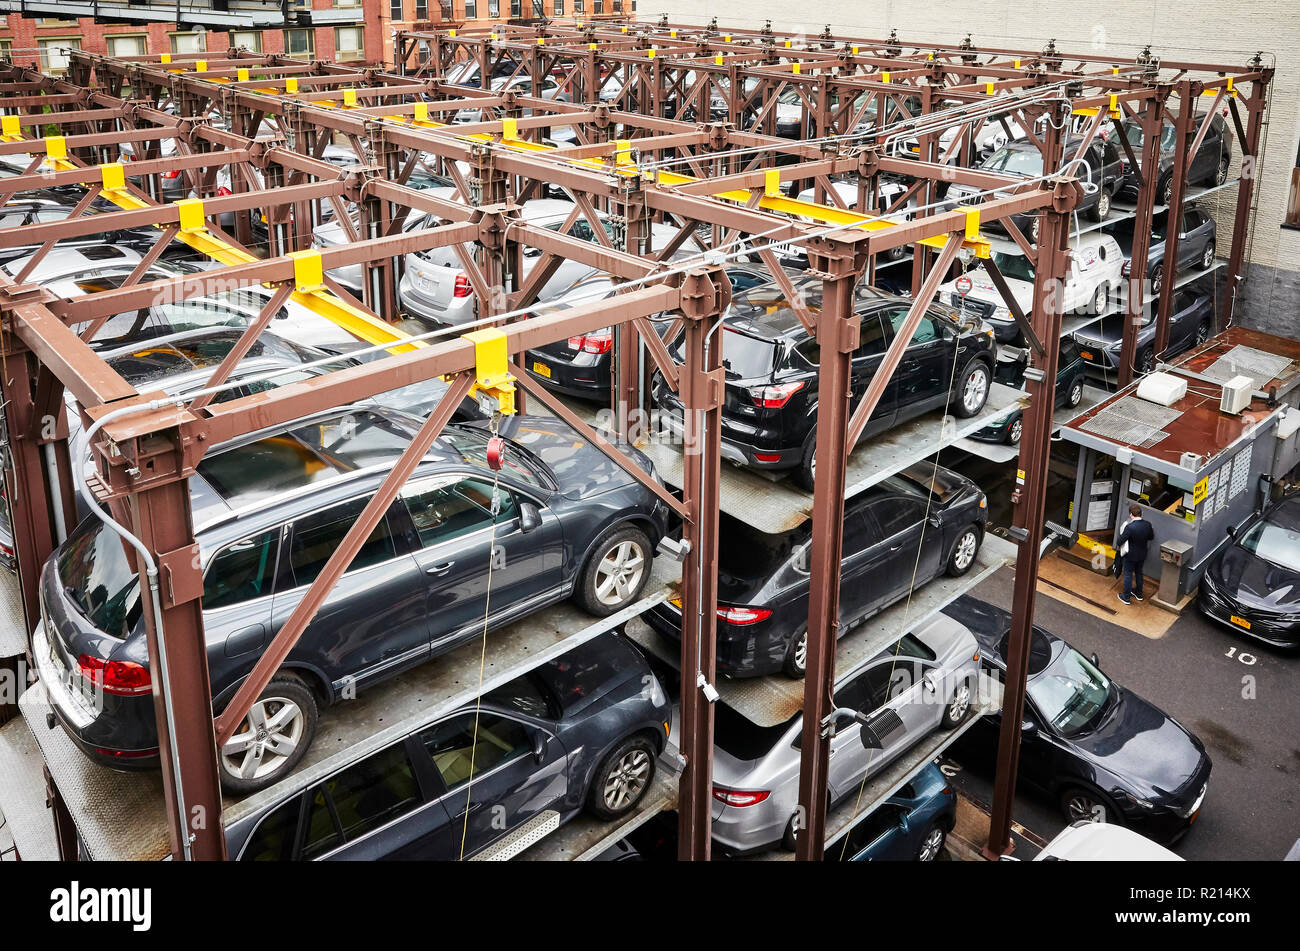 New York City, USA - Juni 28, 2018: Erhöhte Parking System, geeignet für parkende Autos auf ein Minimum zu reduzieren. Stockfoto